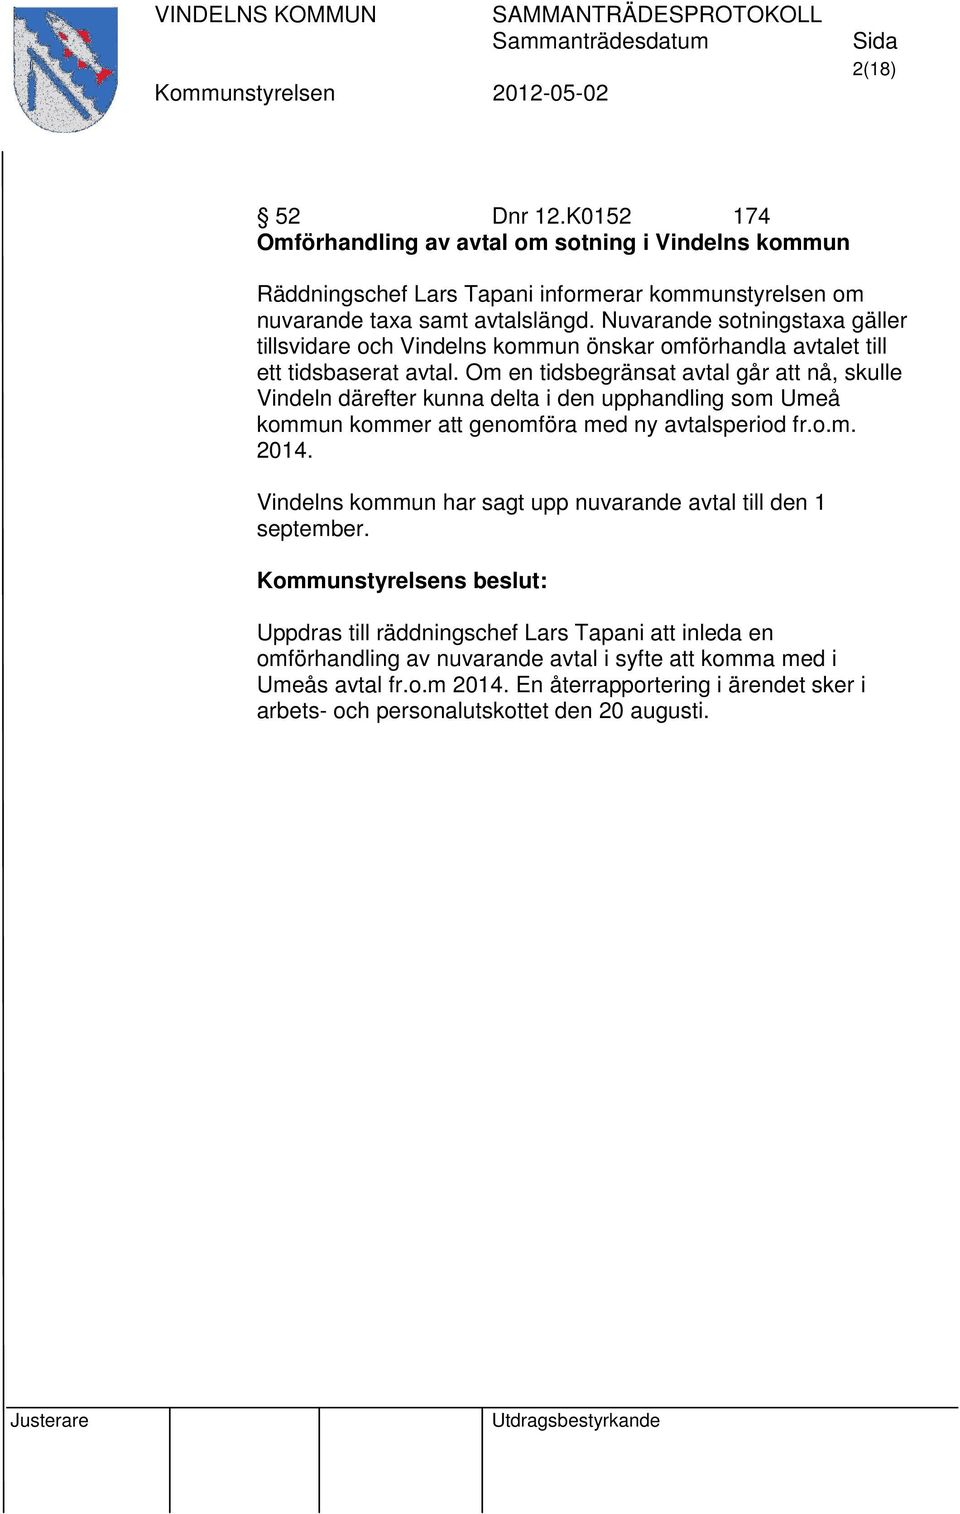 Om en tidsbegränsat avtal går att nå, skulle Vindeln därefter kunna delta i den upphandling som Umeå kommun kommer att genomföra med ny avtalsperiod fr.o.m. 2014.